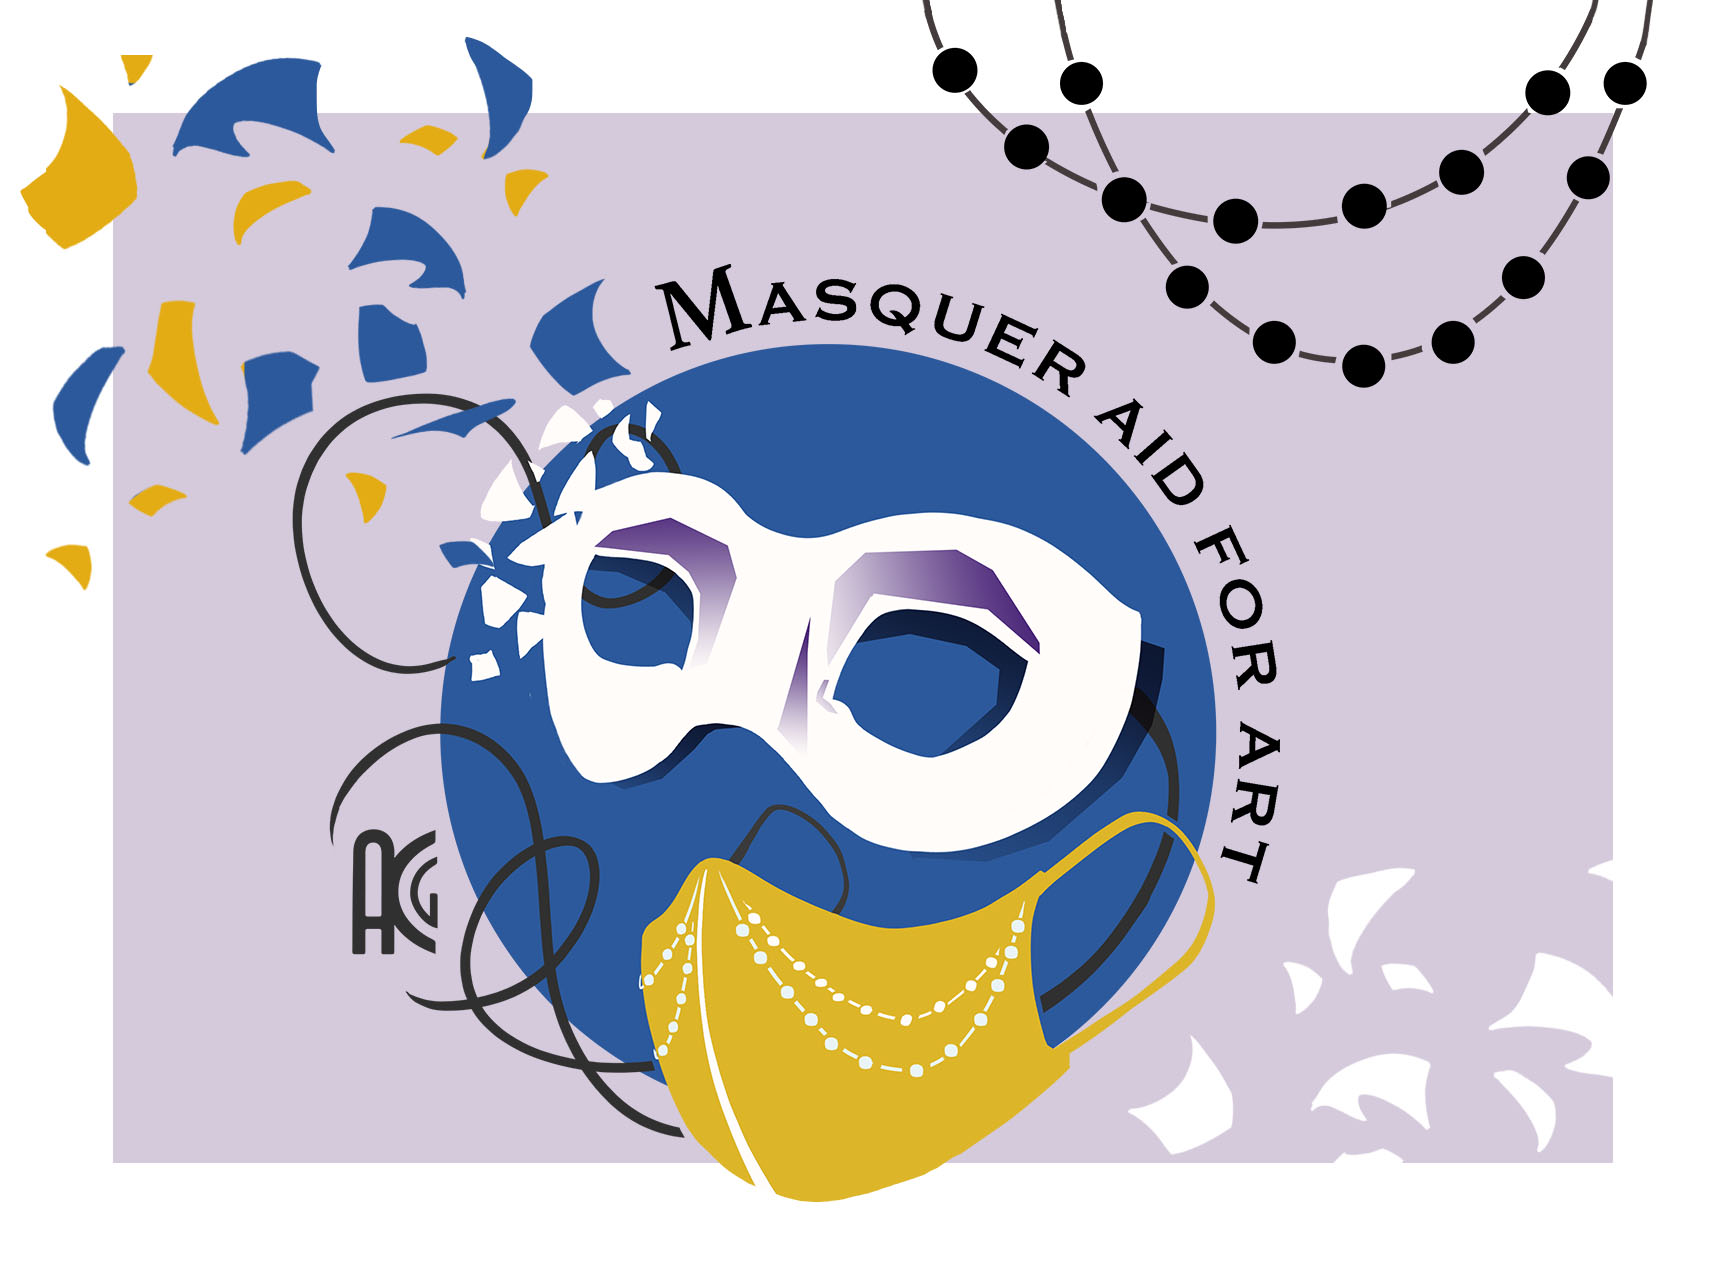 Masqueraid for art gala 2020